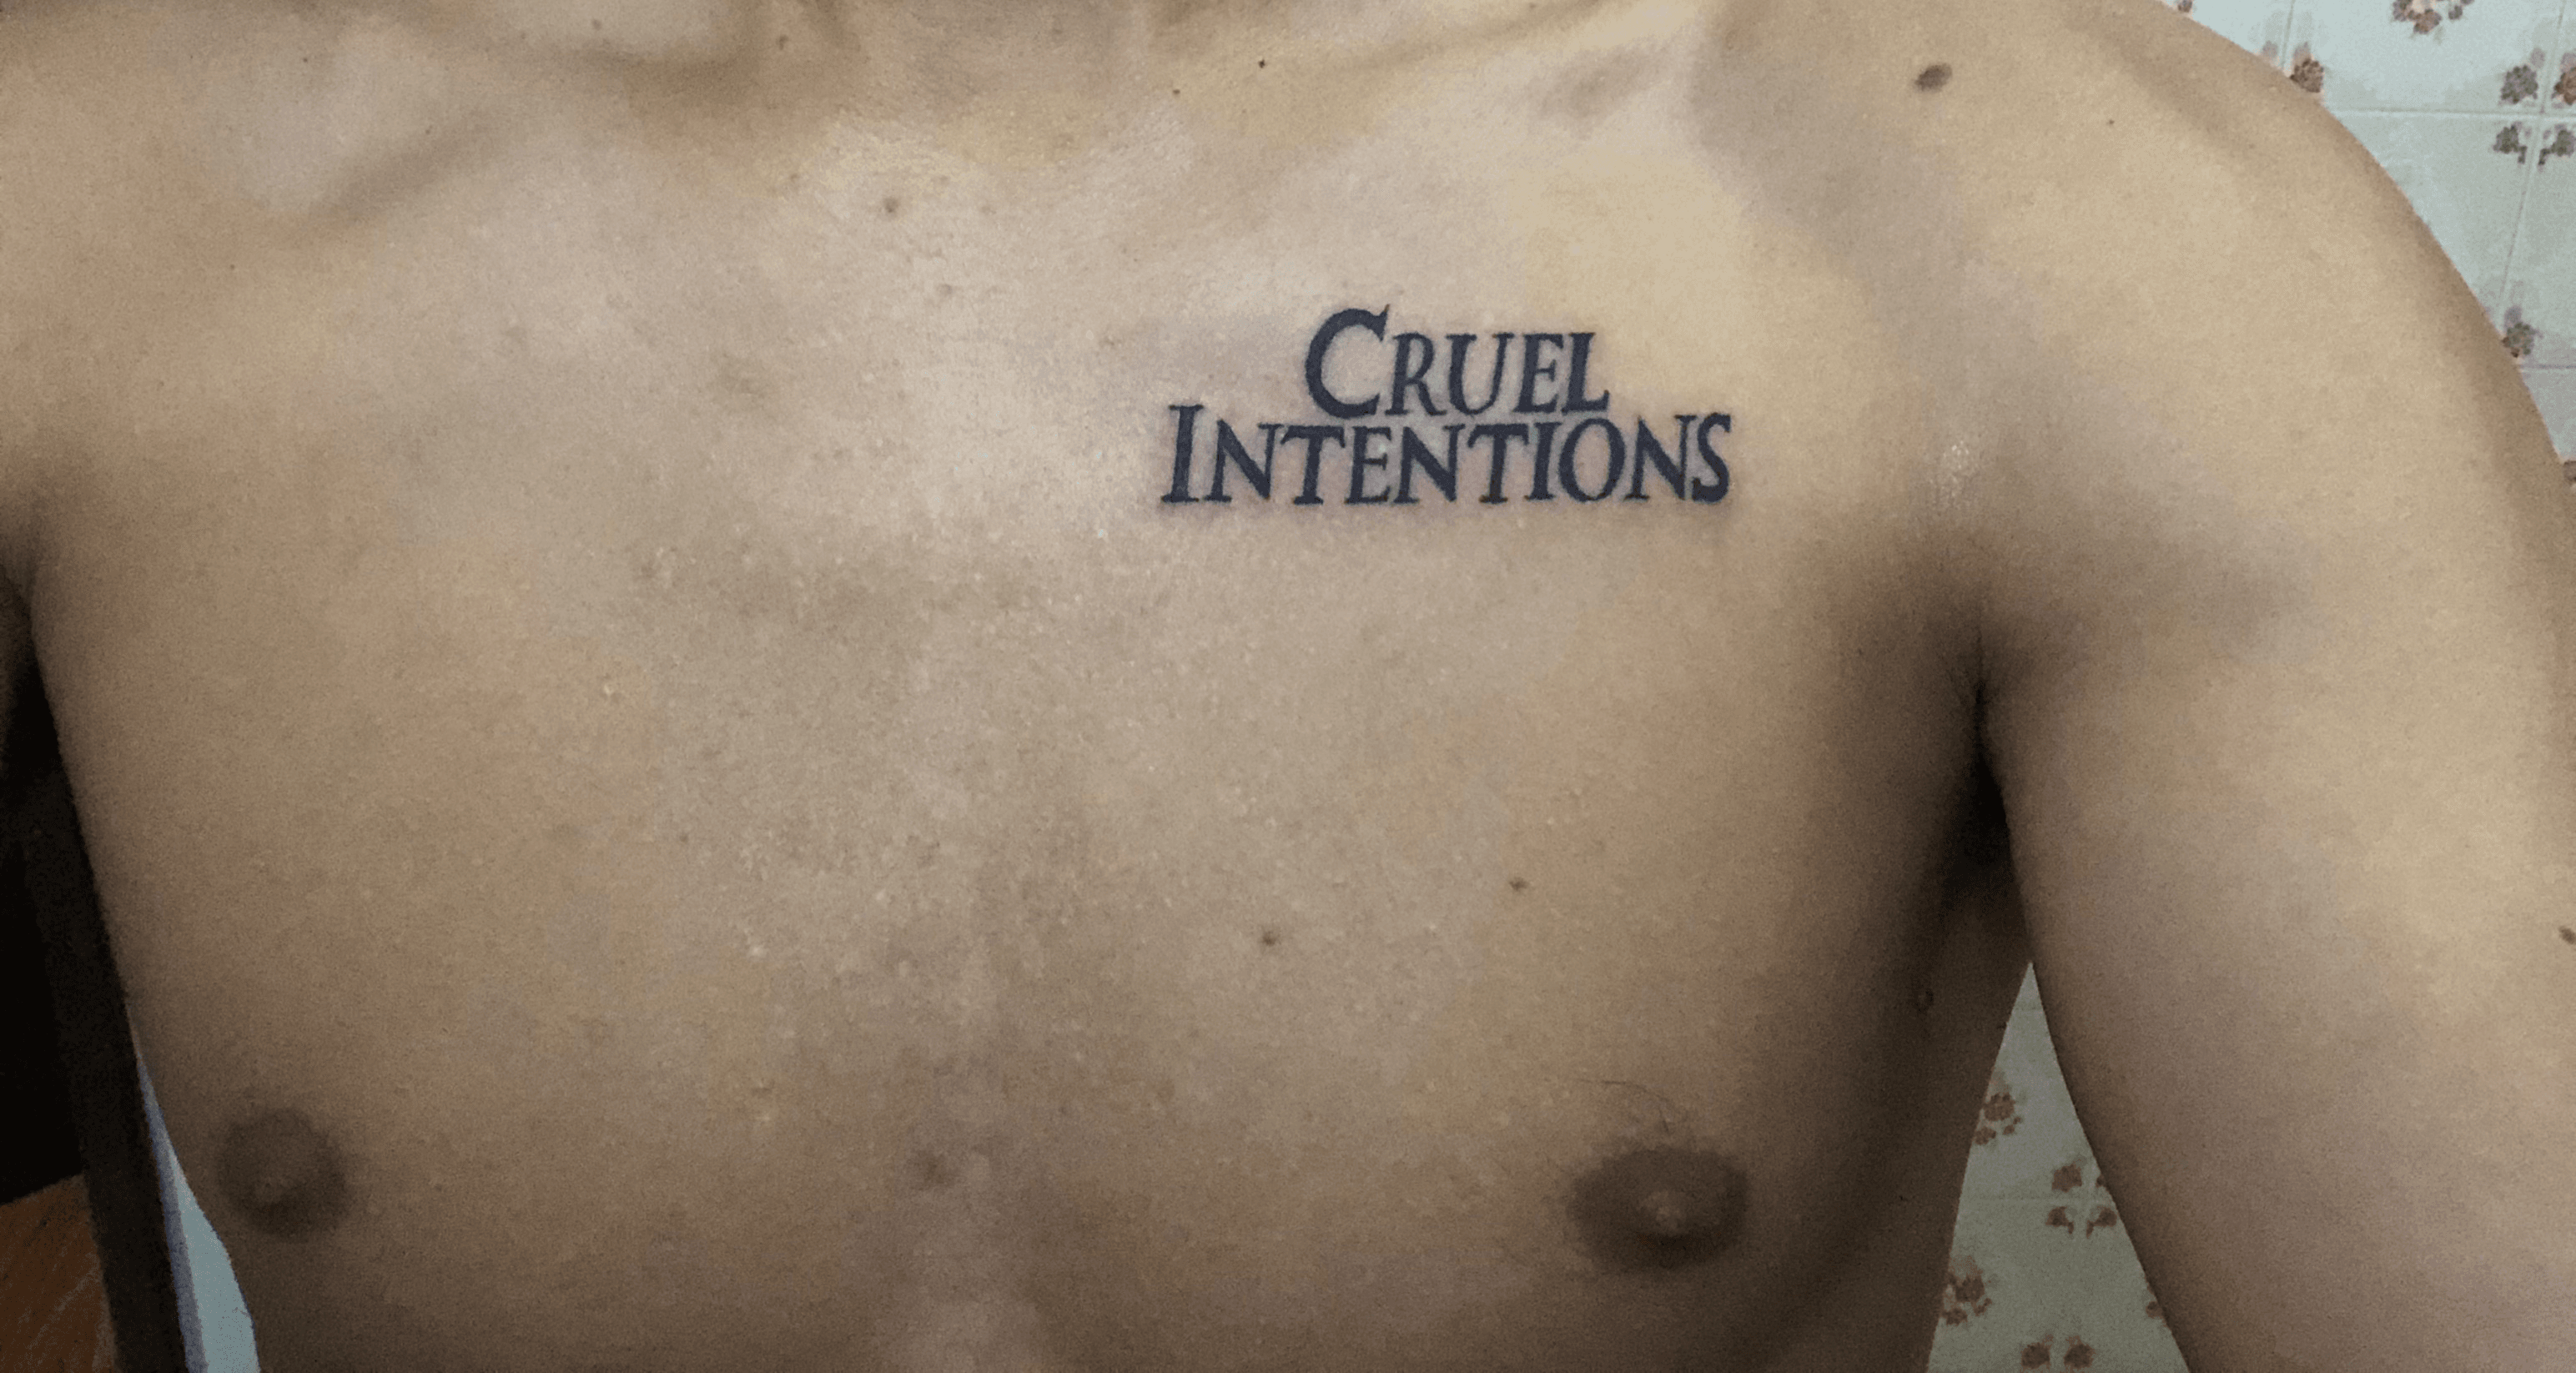 Cruel intentions tattoo